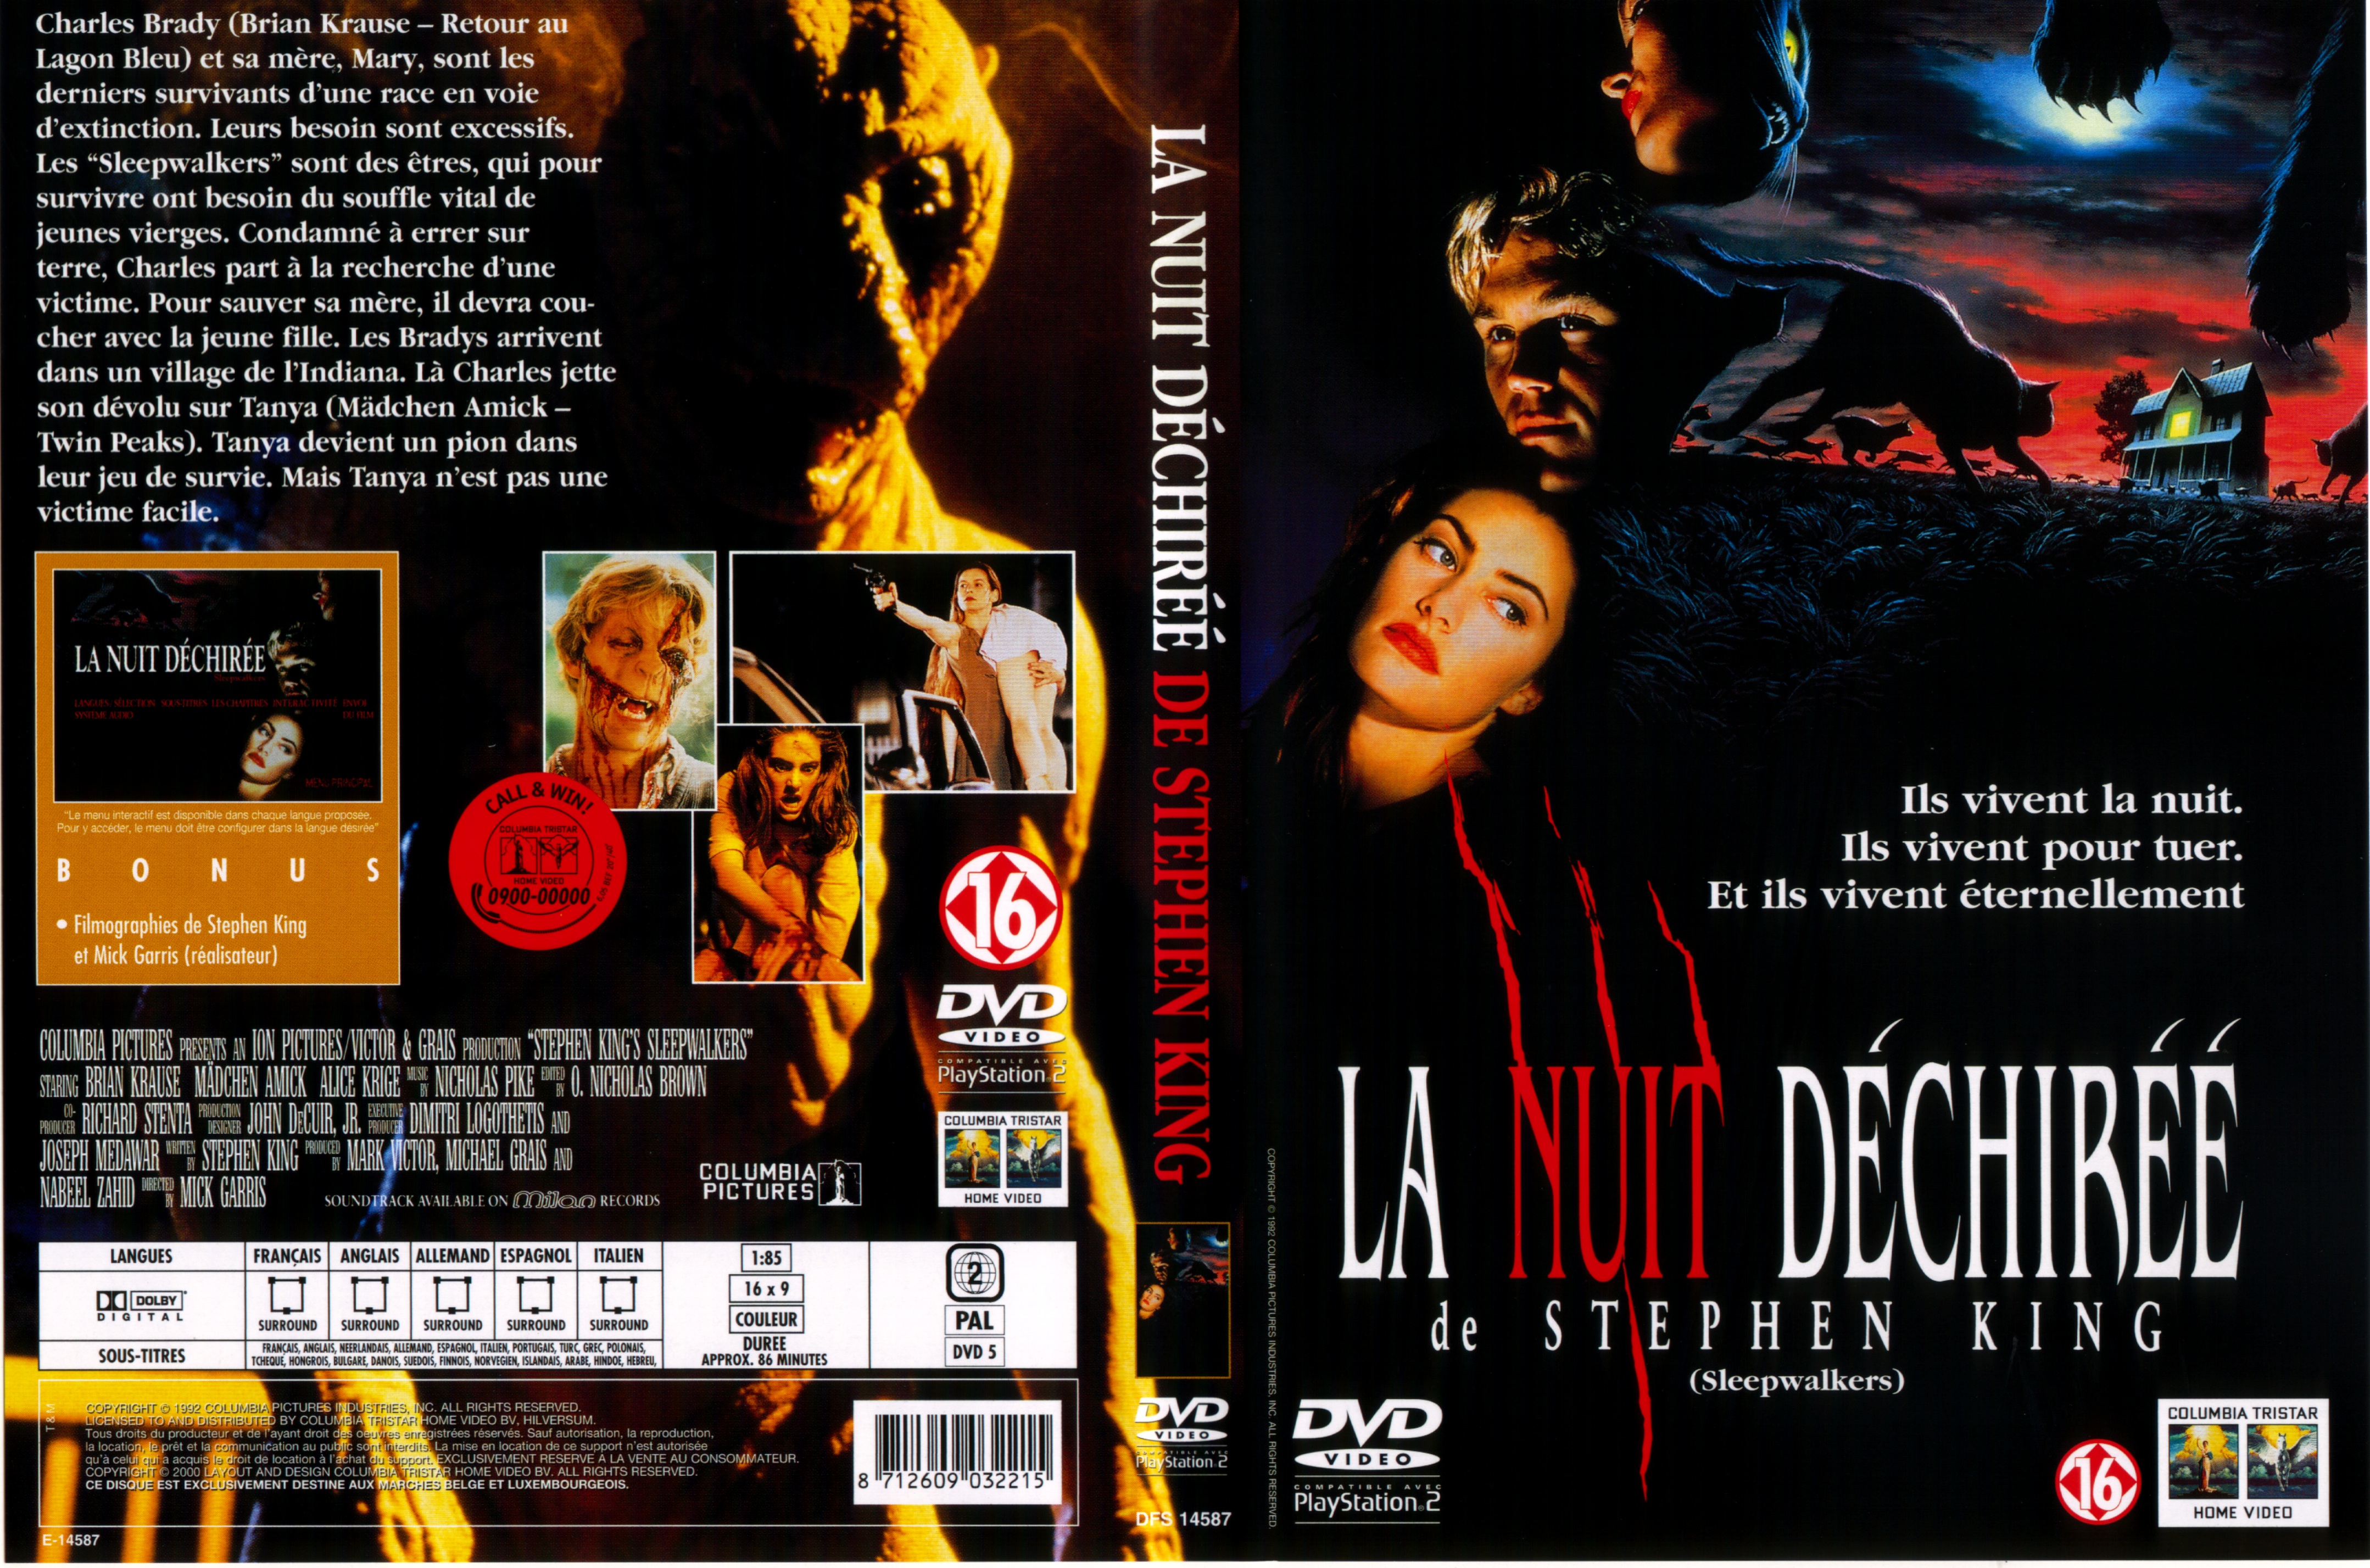 Jaquette DVD La nuit dechire v2